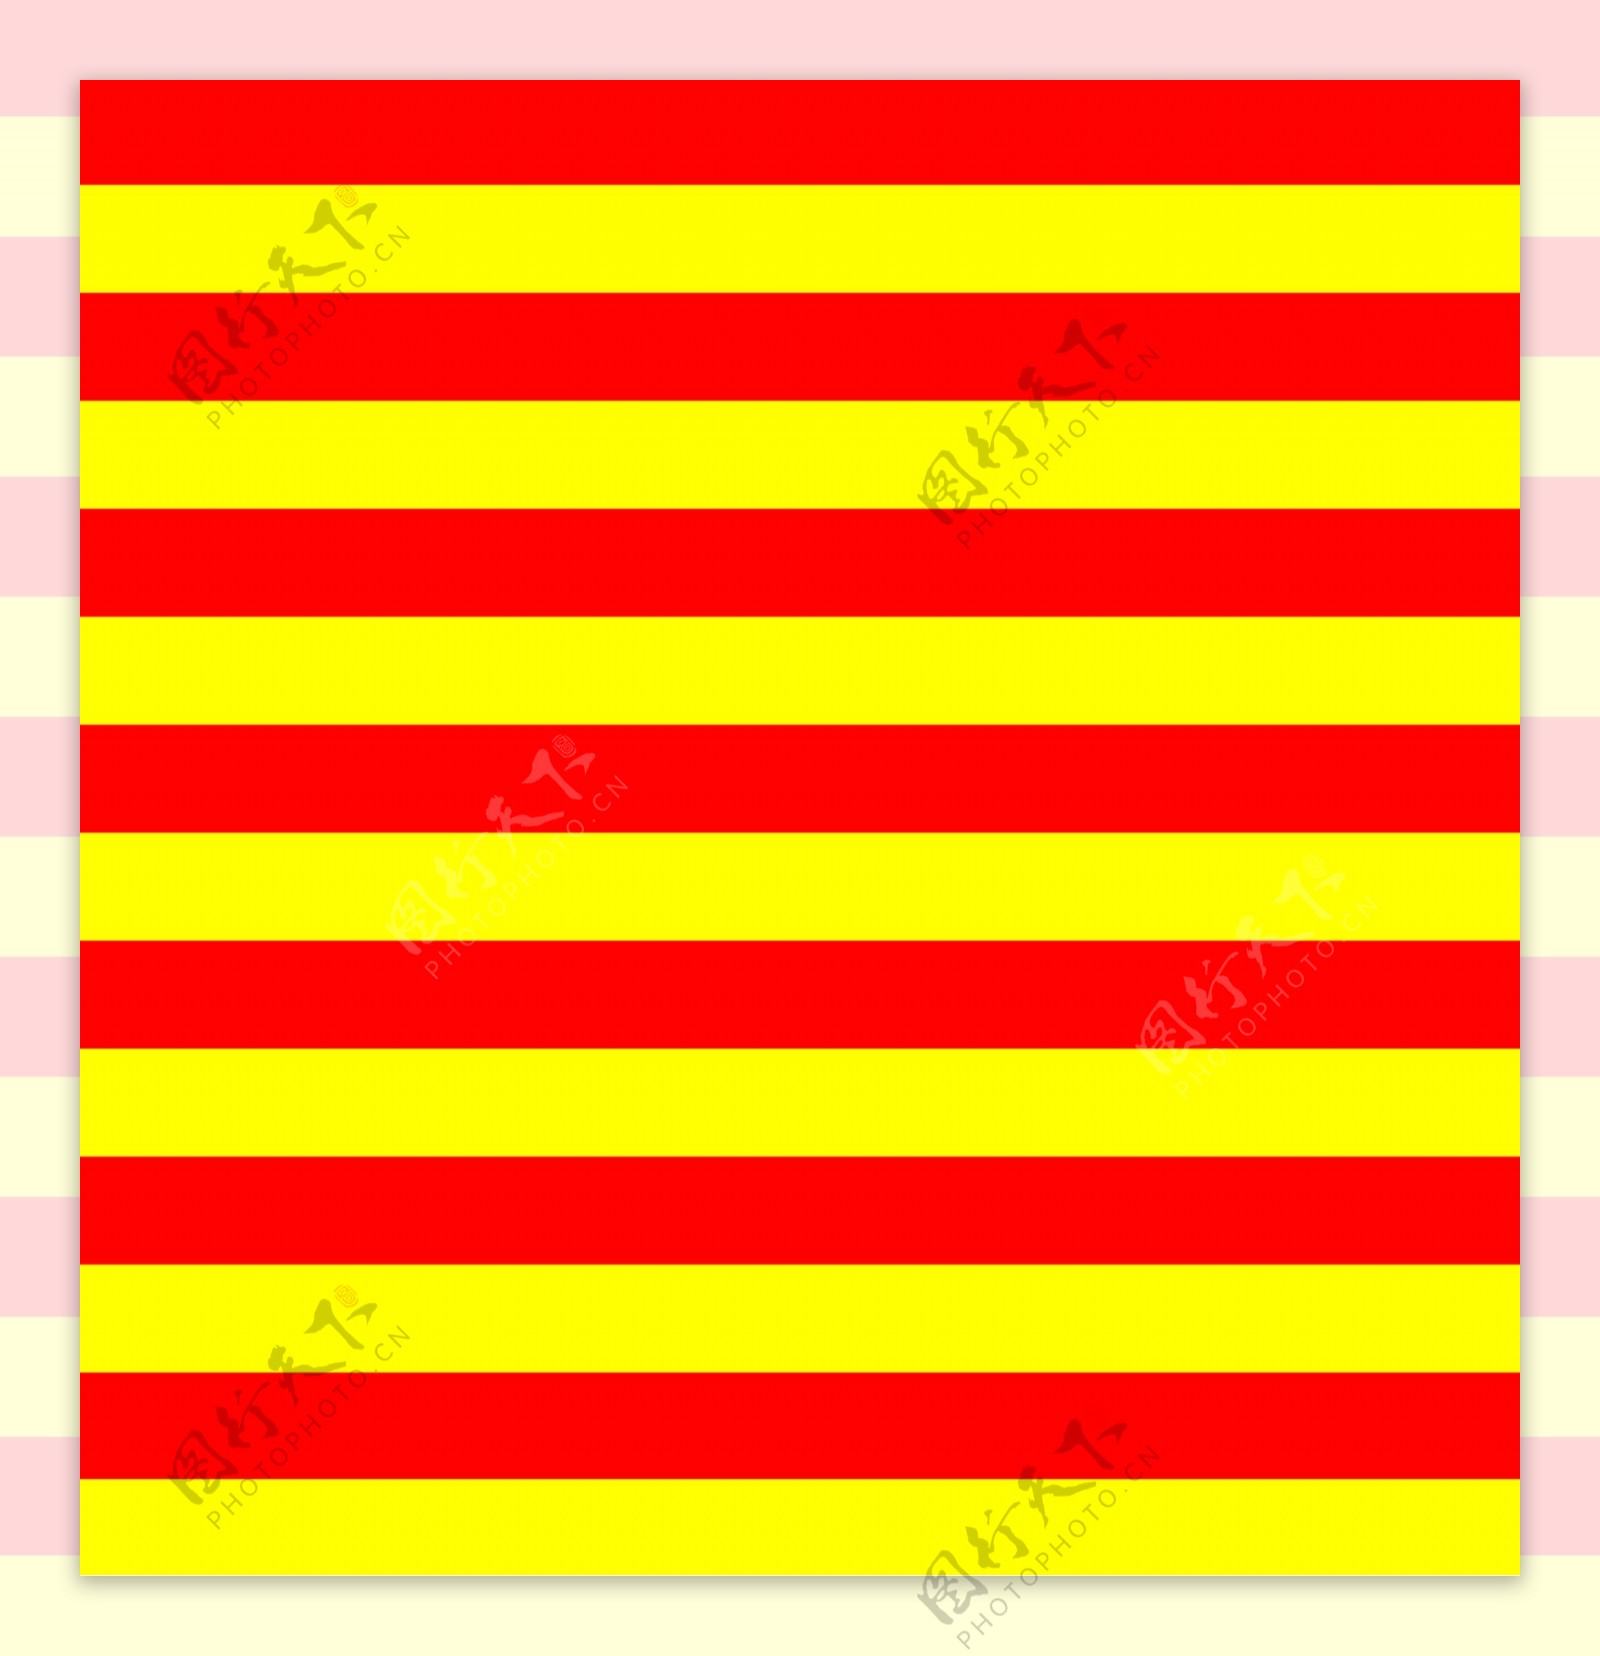 PSD素材红黄色相间背景涂鸦背景橙色波纹